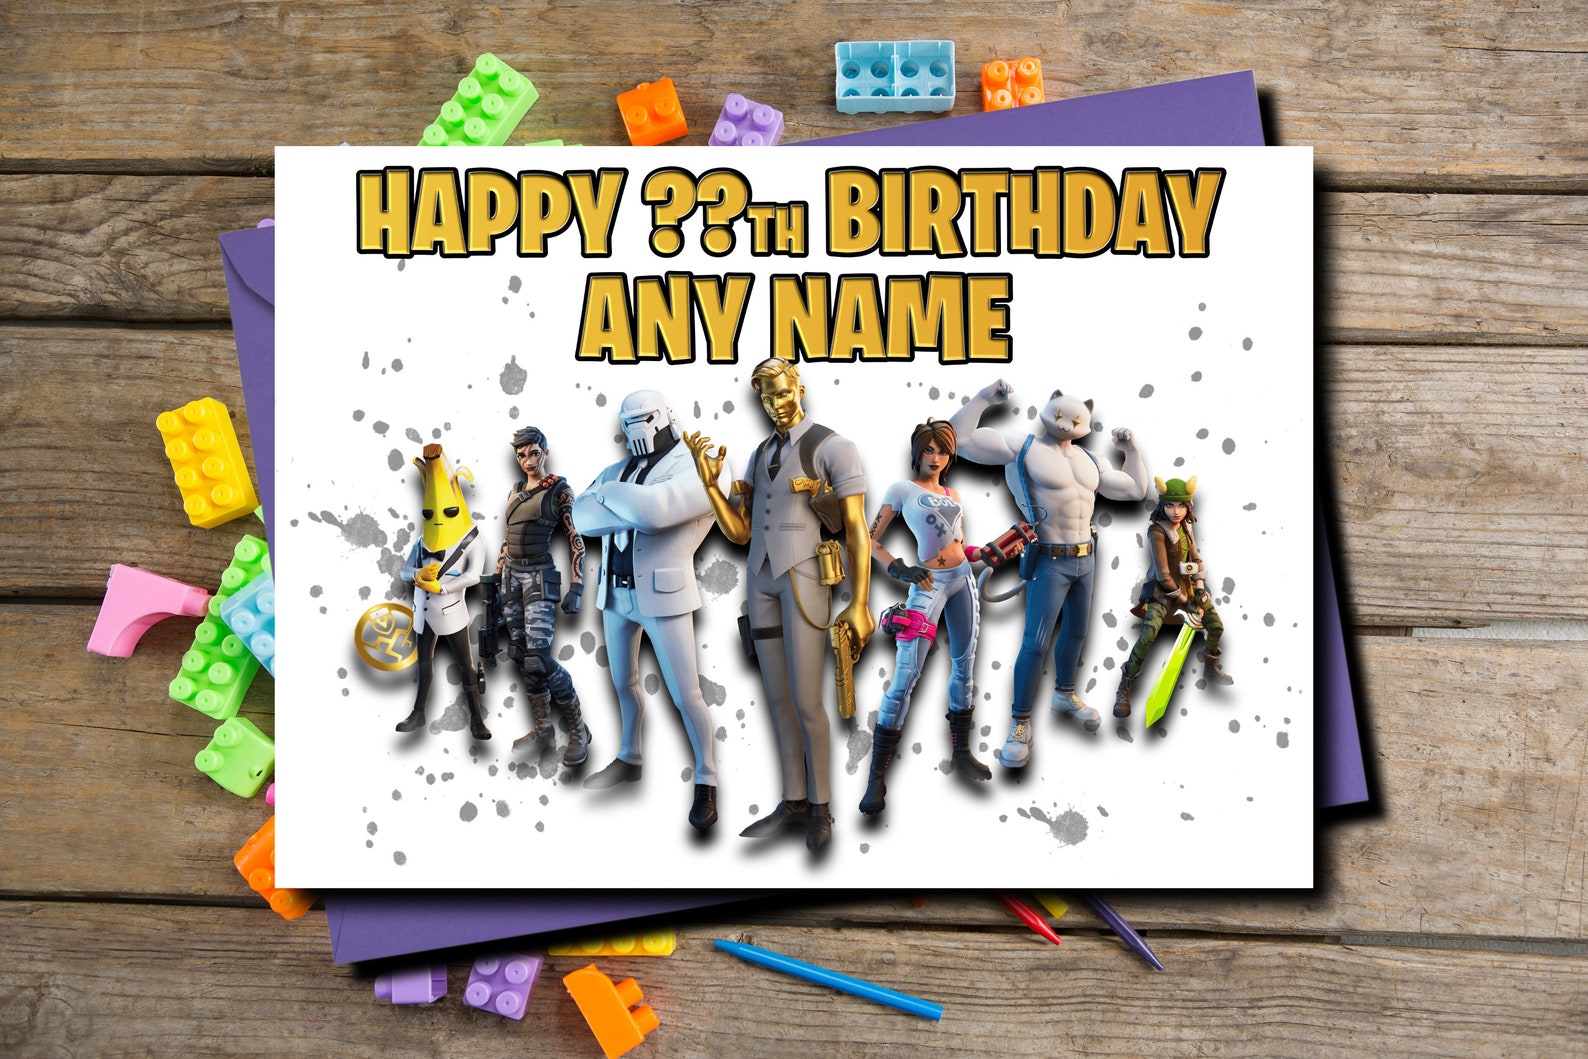 fortnight-birthday-card-fornite-name-birthday-card-etsy